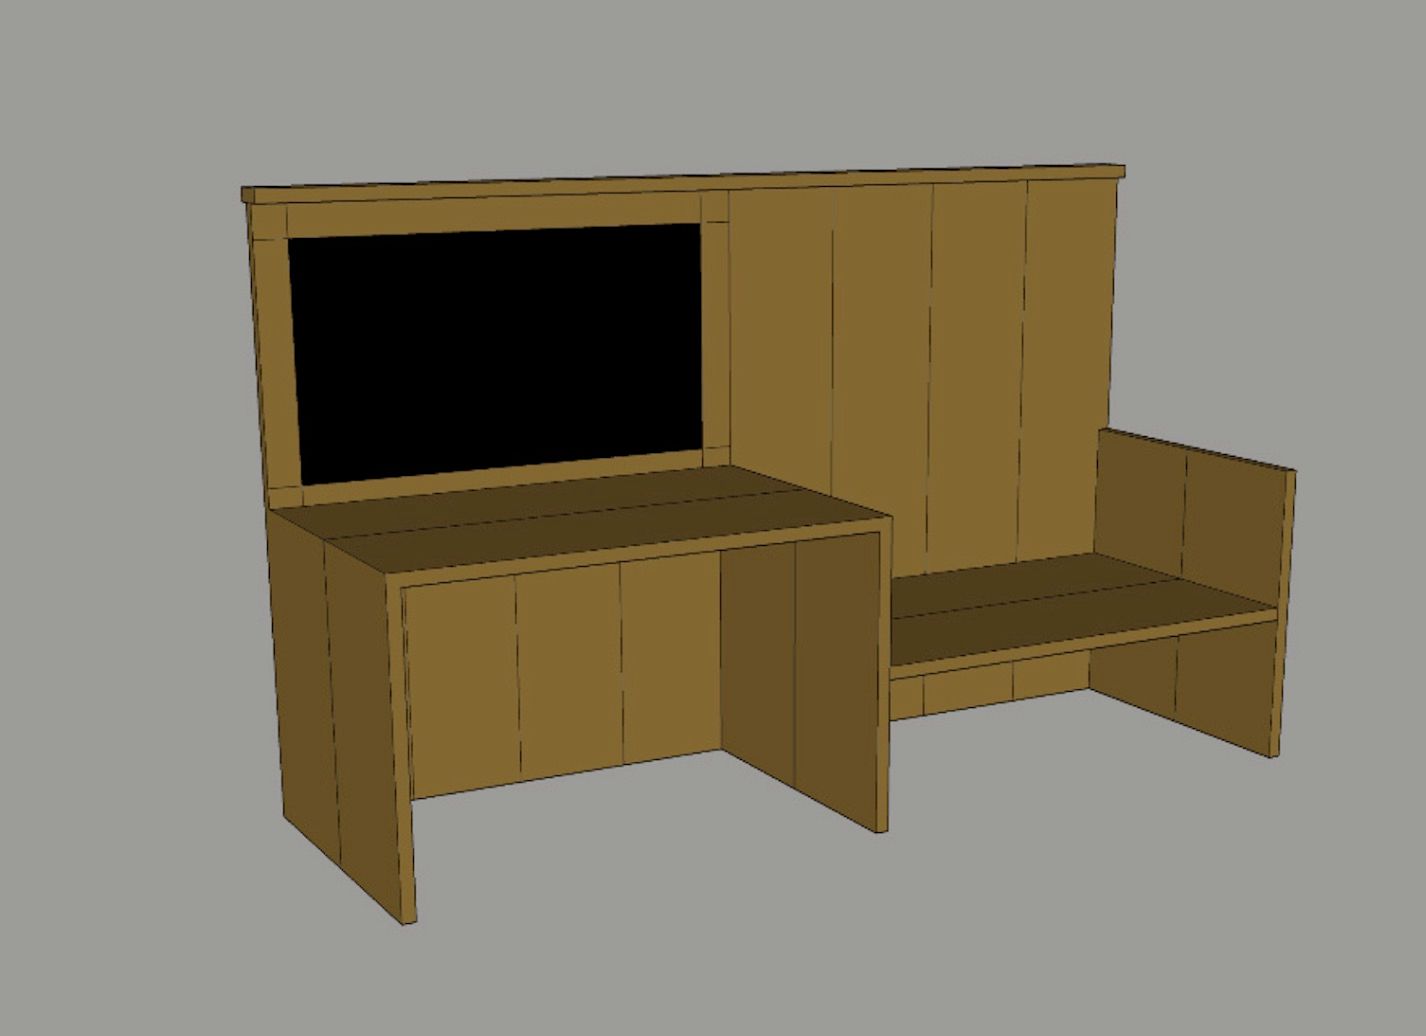 Ontwerp van het meubel dat gemaakt wordt van een oud bed.